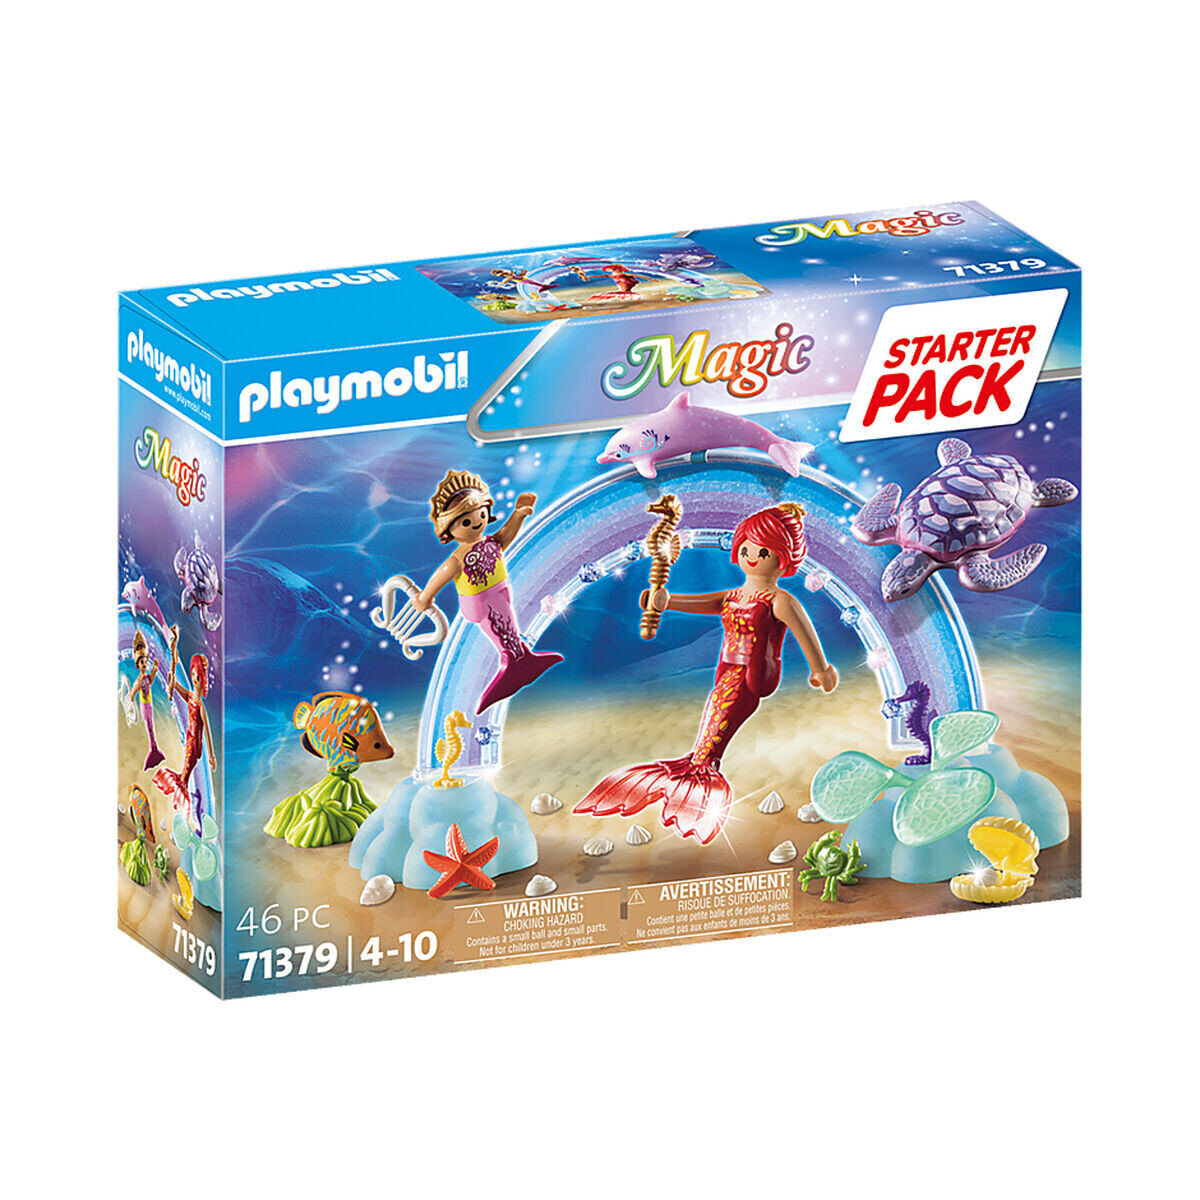 Playset Playmobil 71379 Magic 46 Pieces